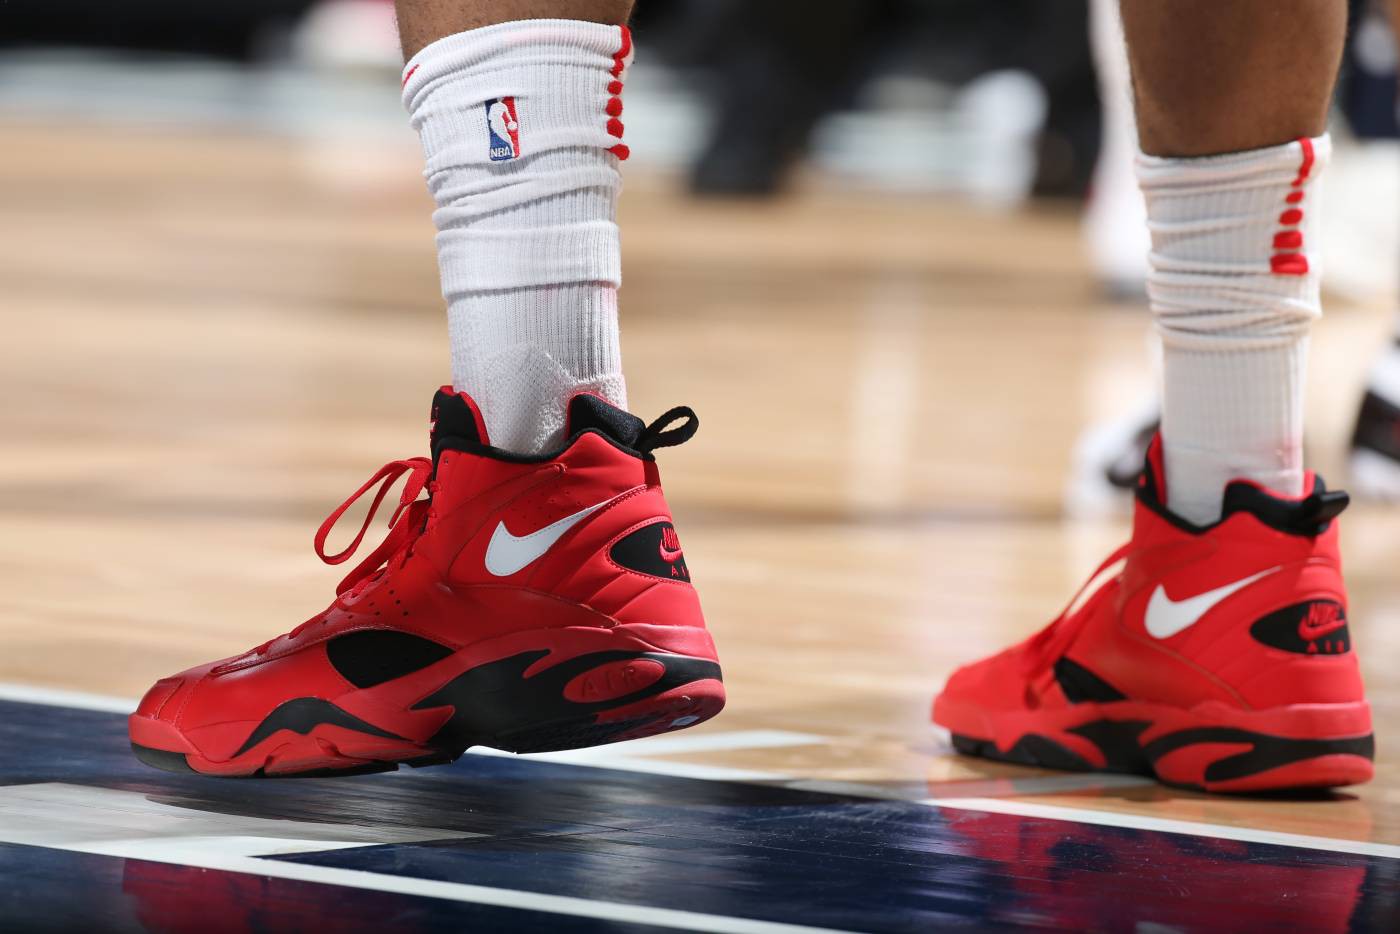 Chi tiết và đầy đủ các mẫu giày khủng của Thánh giày P.J. Tucker tại NBA Playoffs 2018 (kỳ 1) - Ảnh 8.